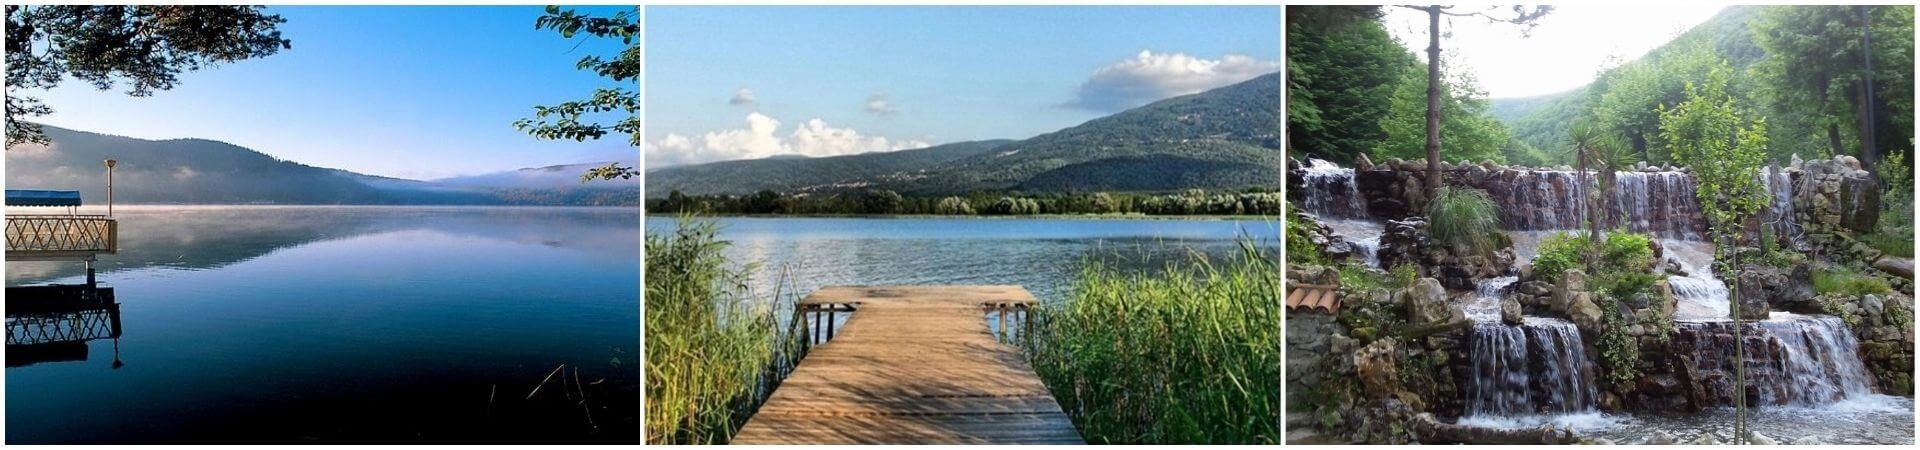 Озеро Сапанджа и тур Масукие: однодневная поездка из Стамбула